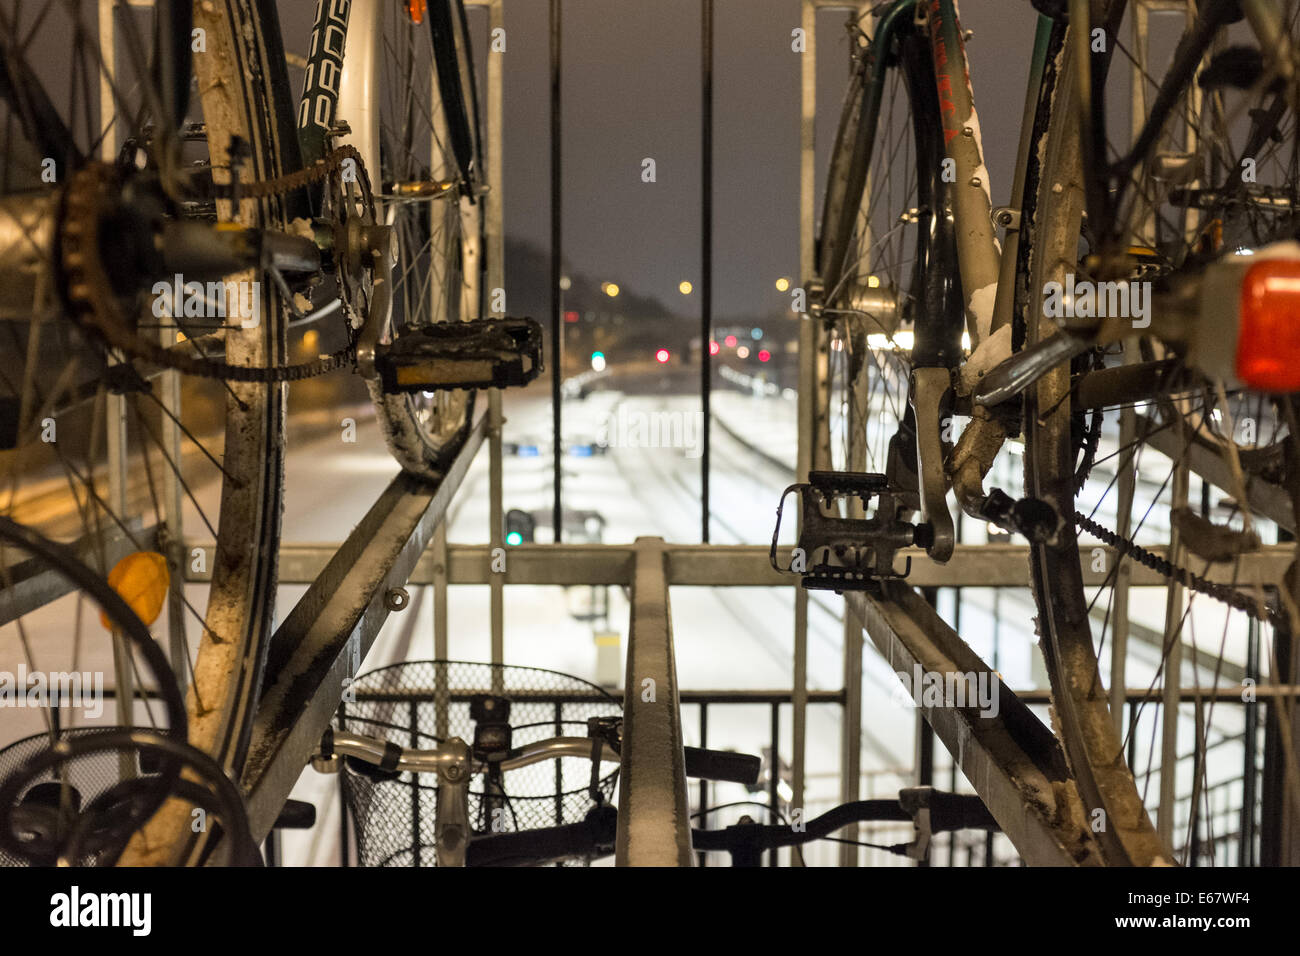 Détail du pédalier et la chaîne de vélo garé sur le chemin de fer recouverte de neige à Aarhus, Danemark, Europe Banque D'Images